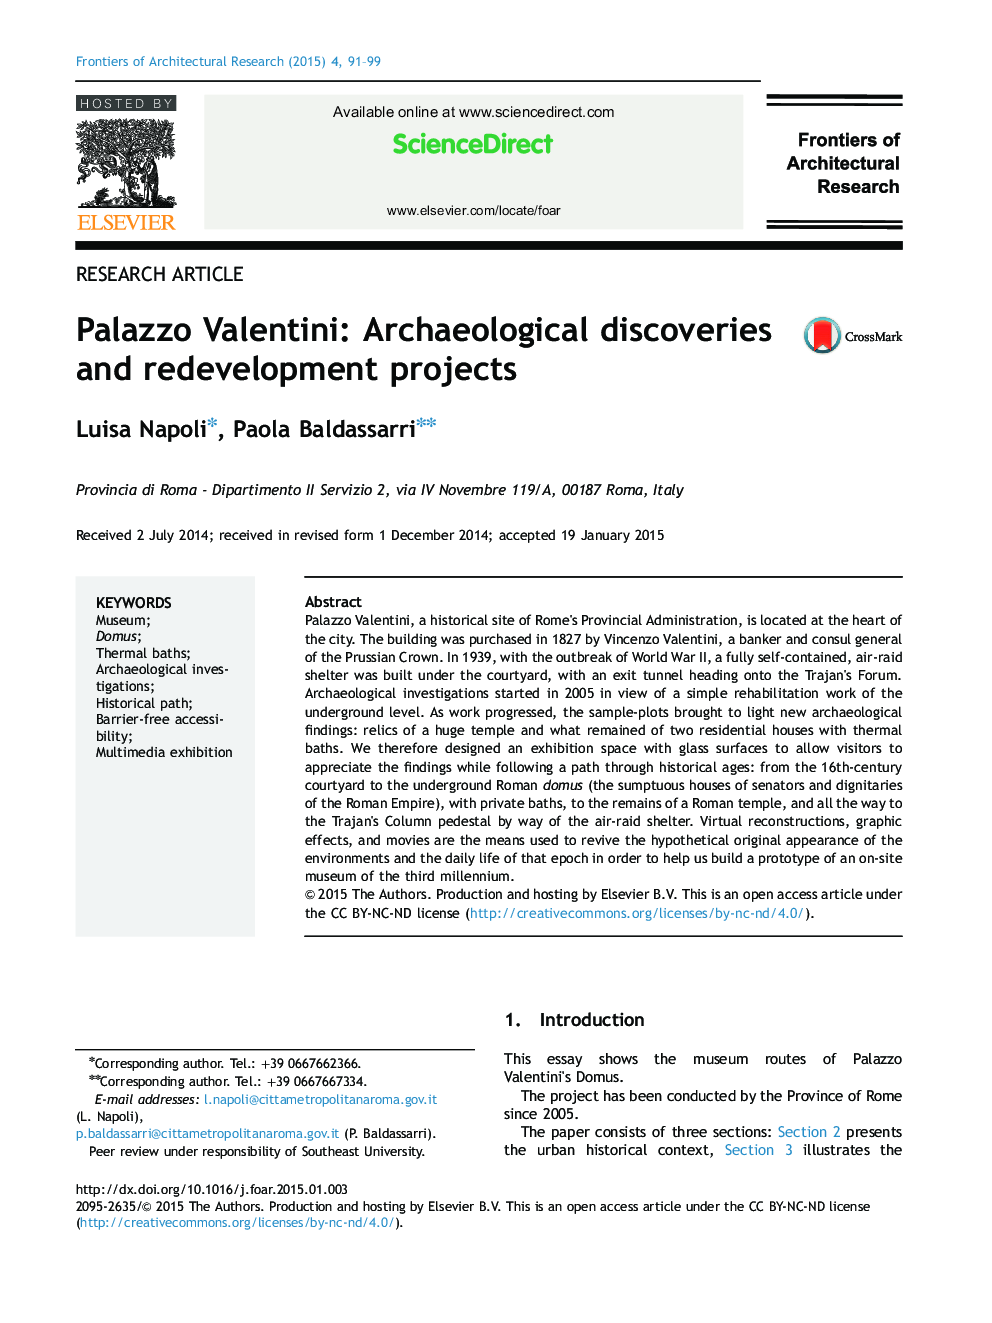 پالازو والنتینی: اکتشافات باستان شناسی و پروژه های بازسازی